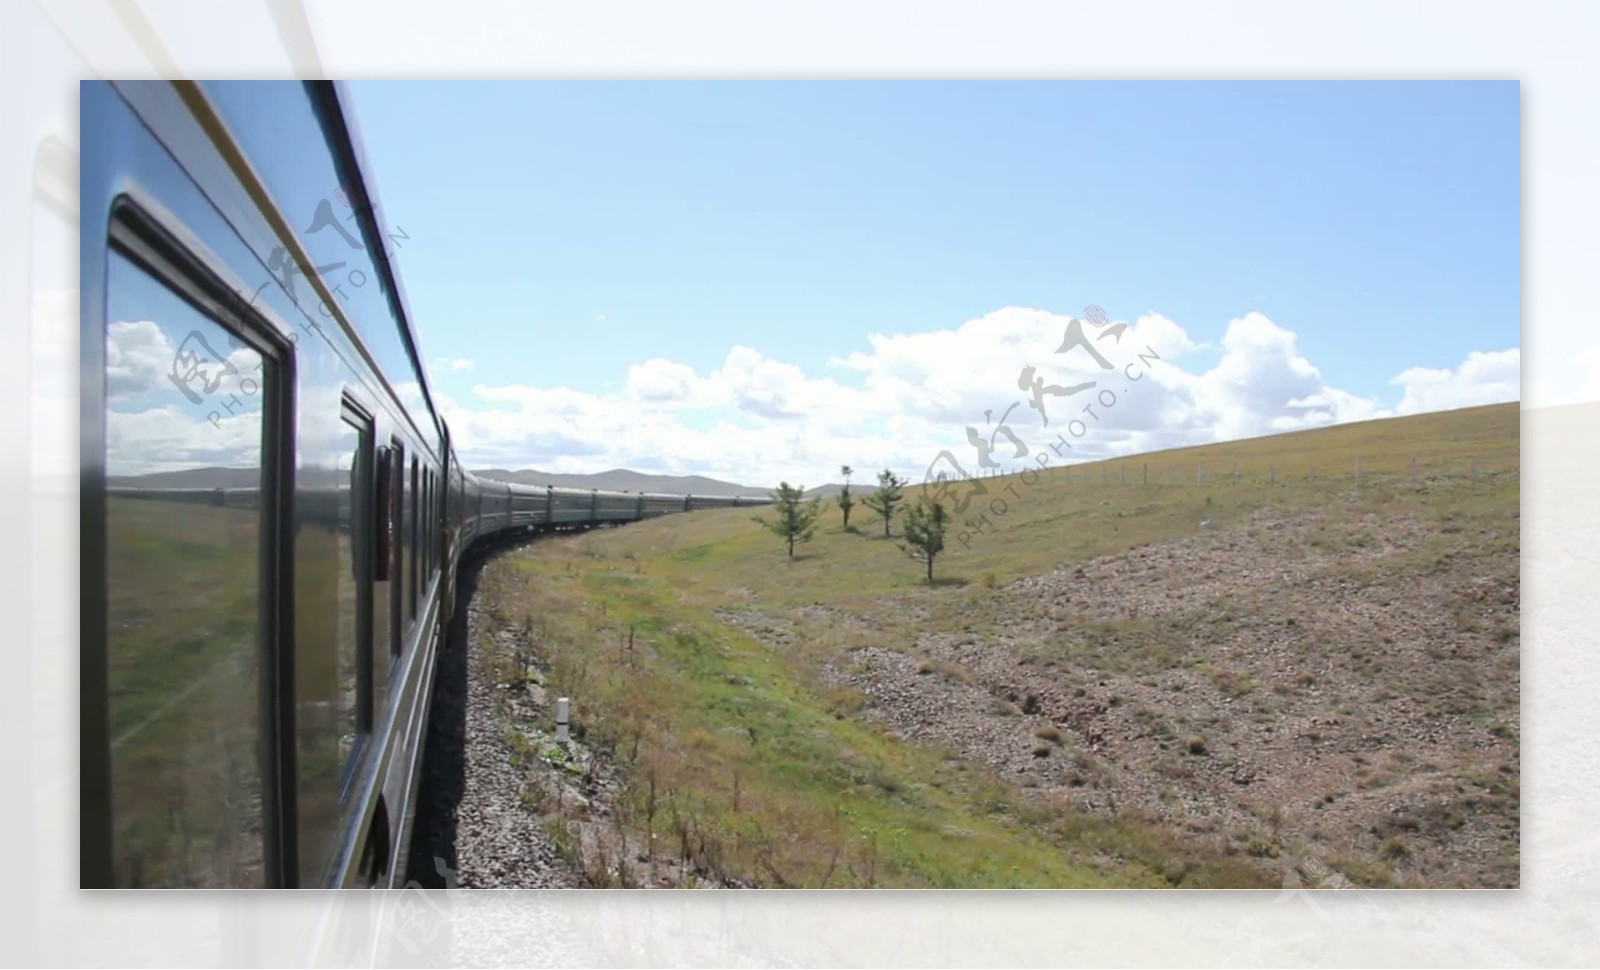 穿越西伯利亚的列车在蒙古